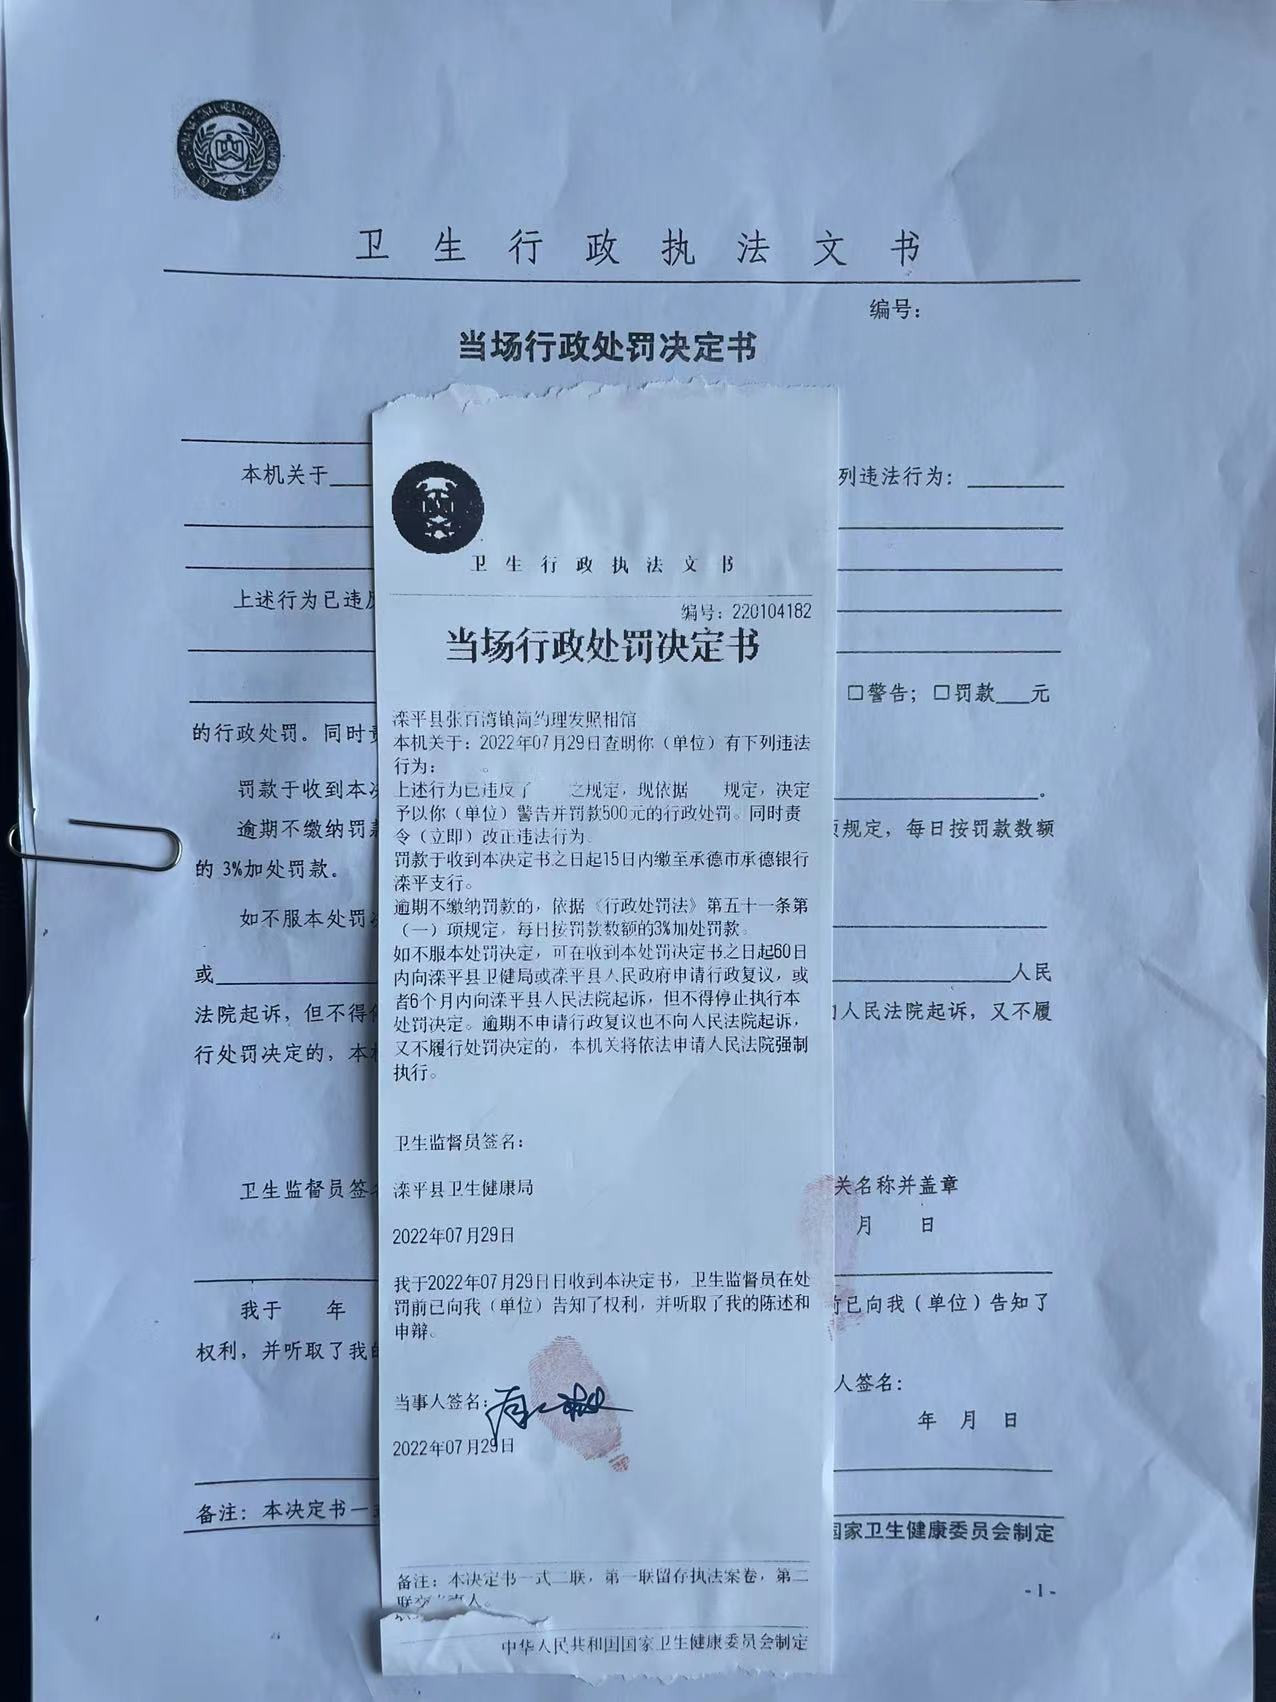 滦平县卫生健康局关于220104182处罚决定的公示.jpg